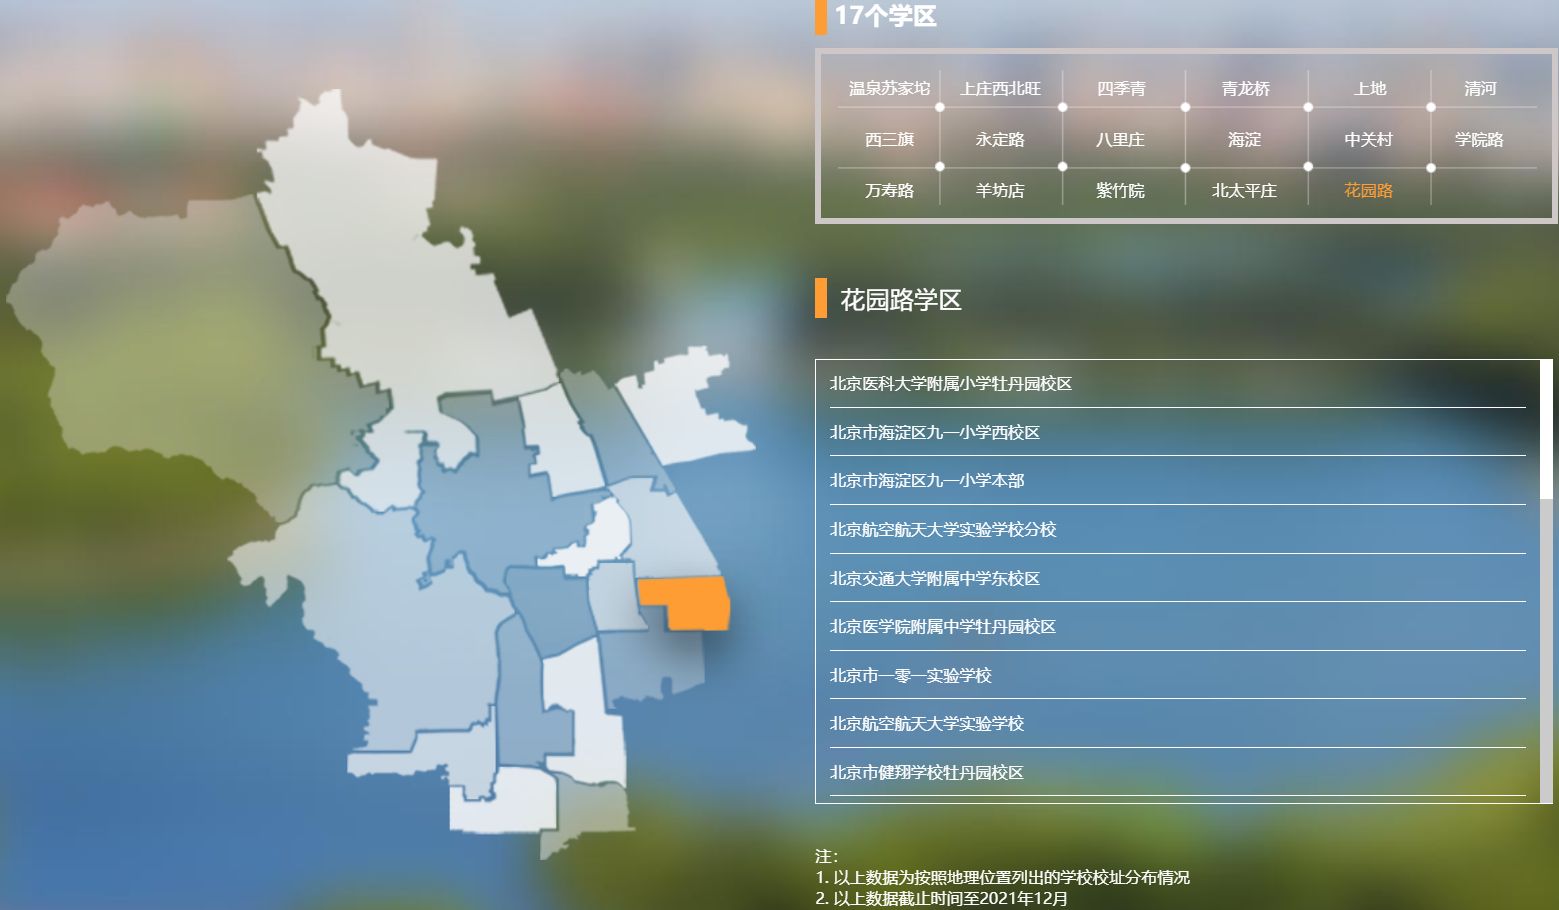 北京海淀花园路学区划片学校有哪些?附汇总表